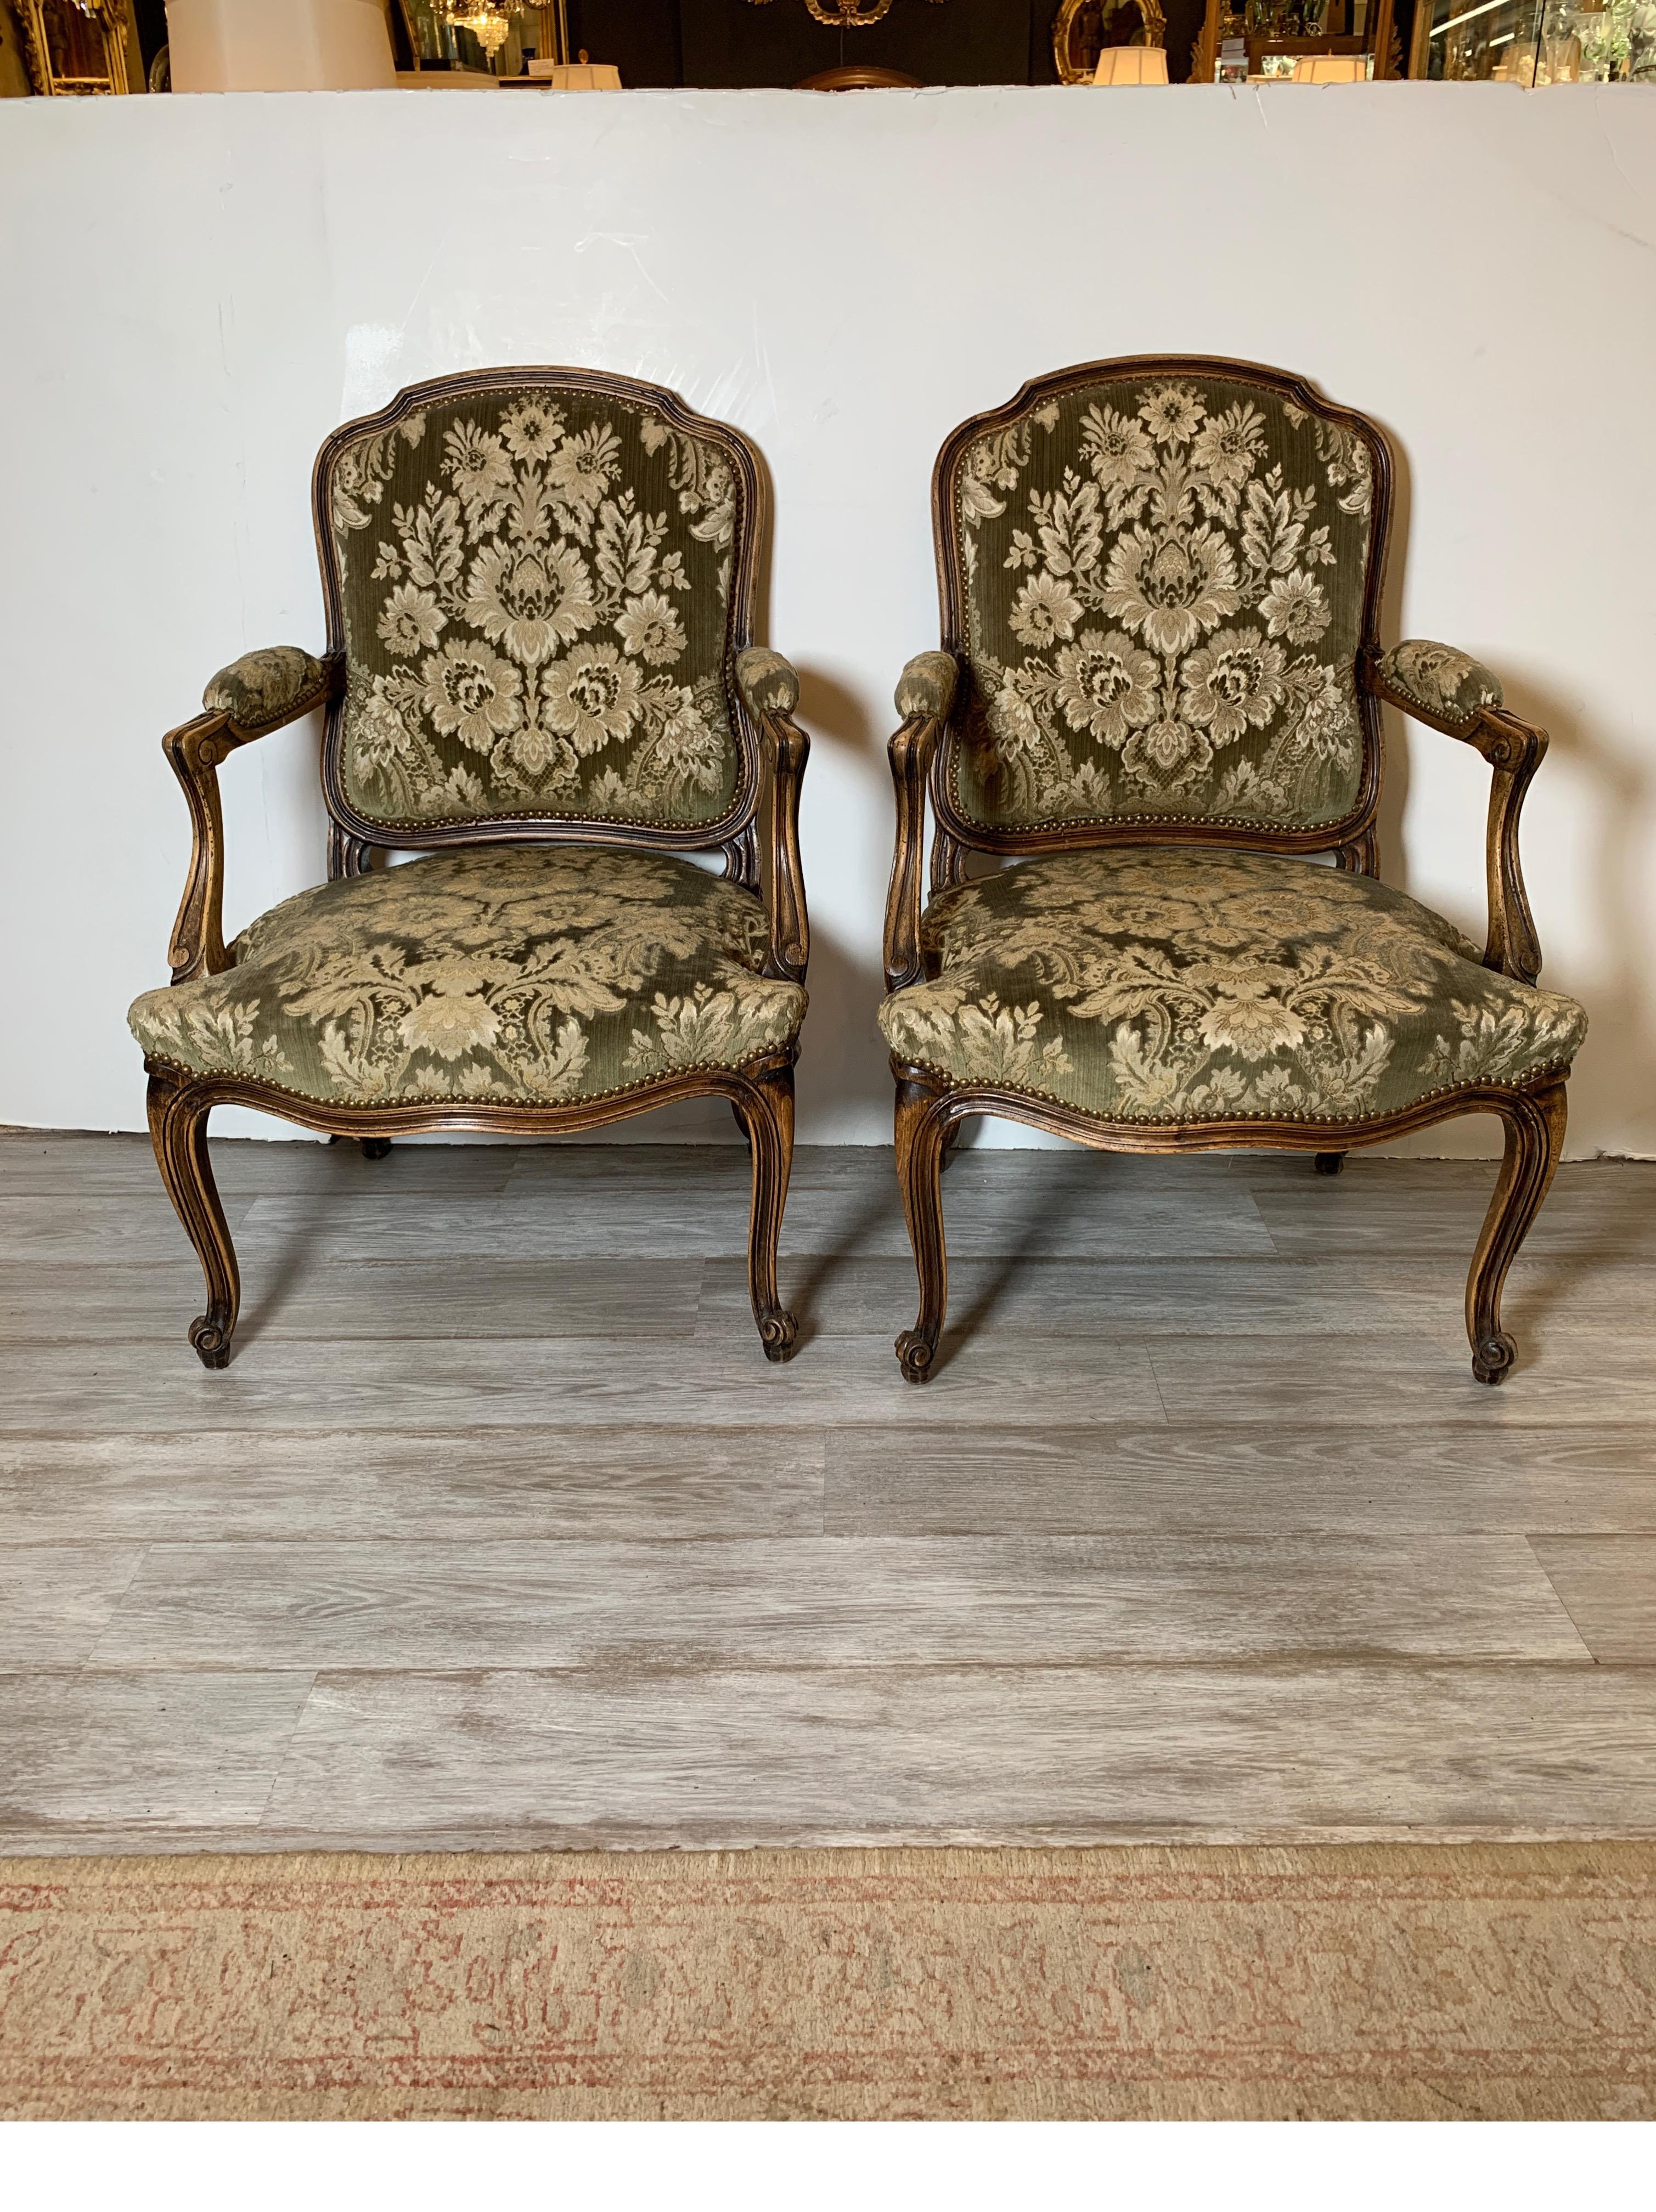 Une paire de chaises Fauteils sculptés français avec une tapisserie damassée en velours italien. Le velours vert sauge avec un damas d'or doux avec une garniture de tête de clou en laiton vieilli. Le cadre en bois présente une finition naturelle